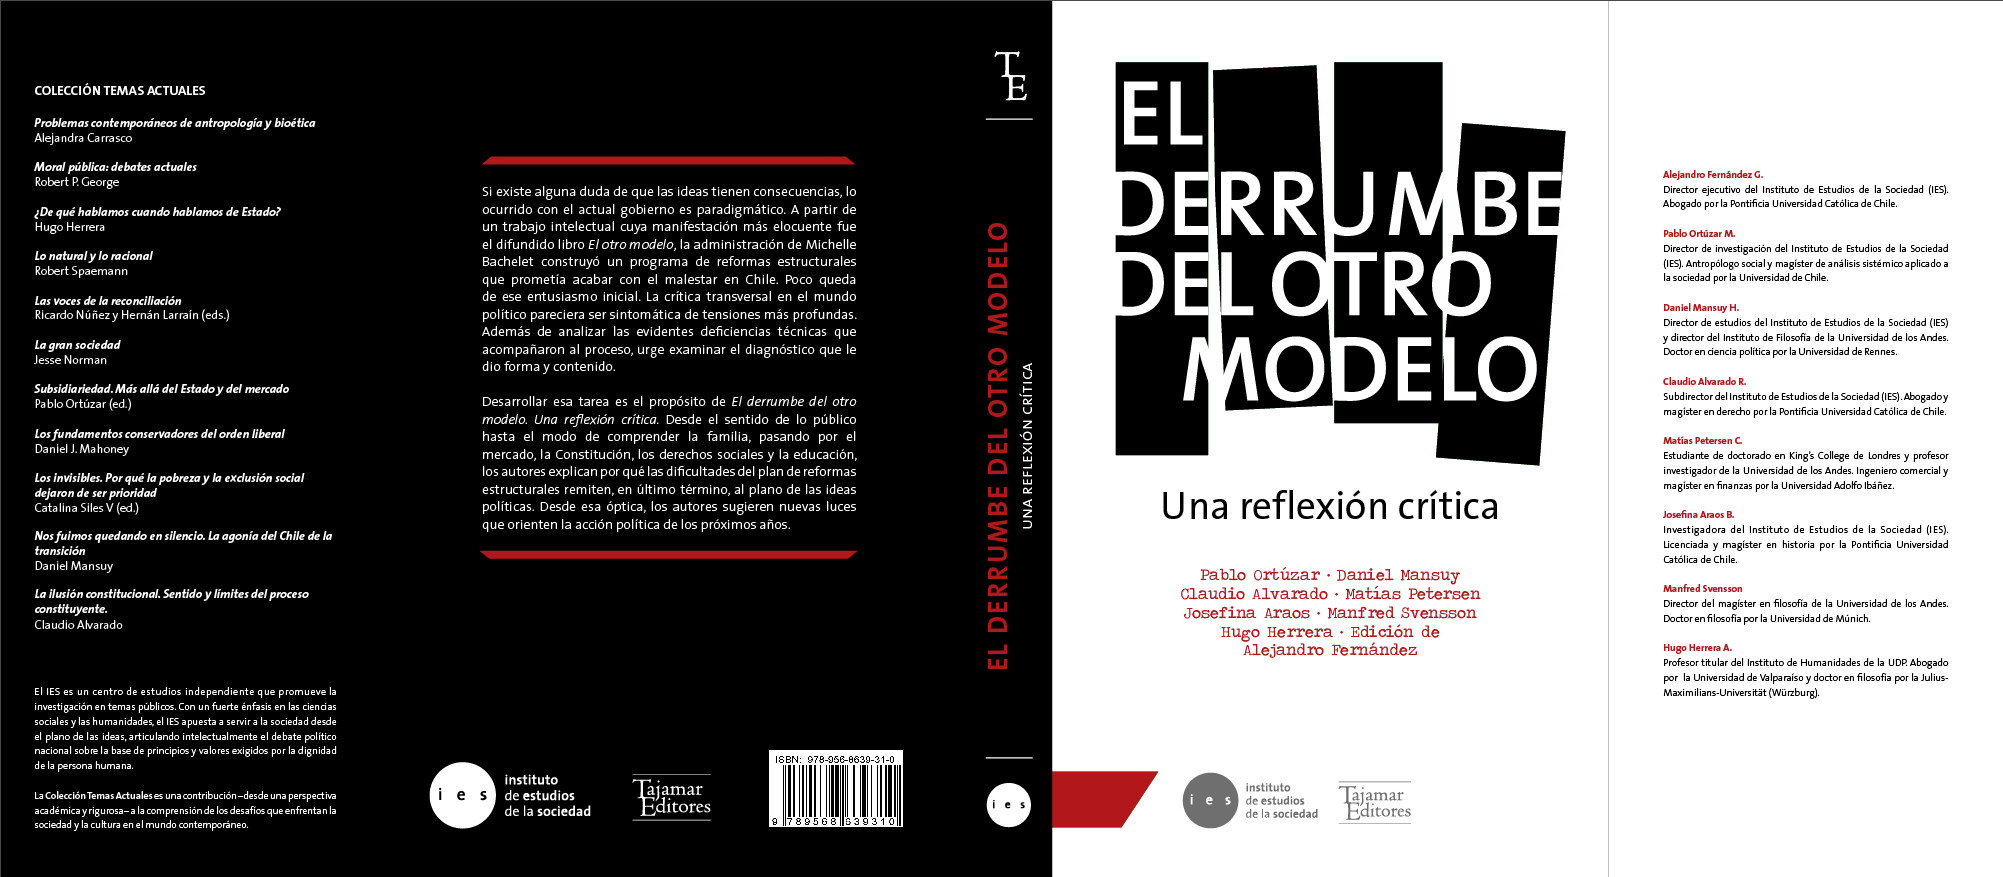 Portada_libro_El_derrumbe_del_otro_modelo.png